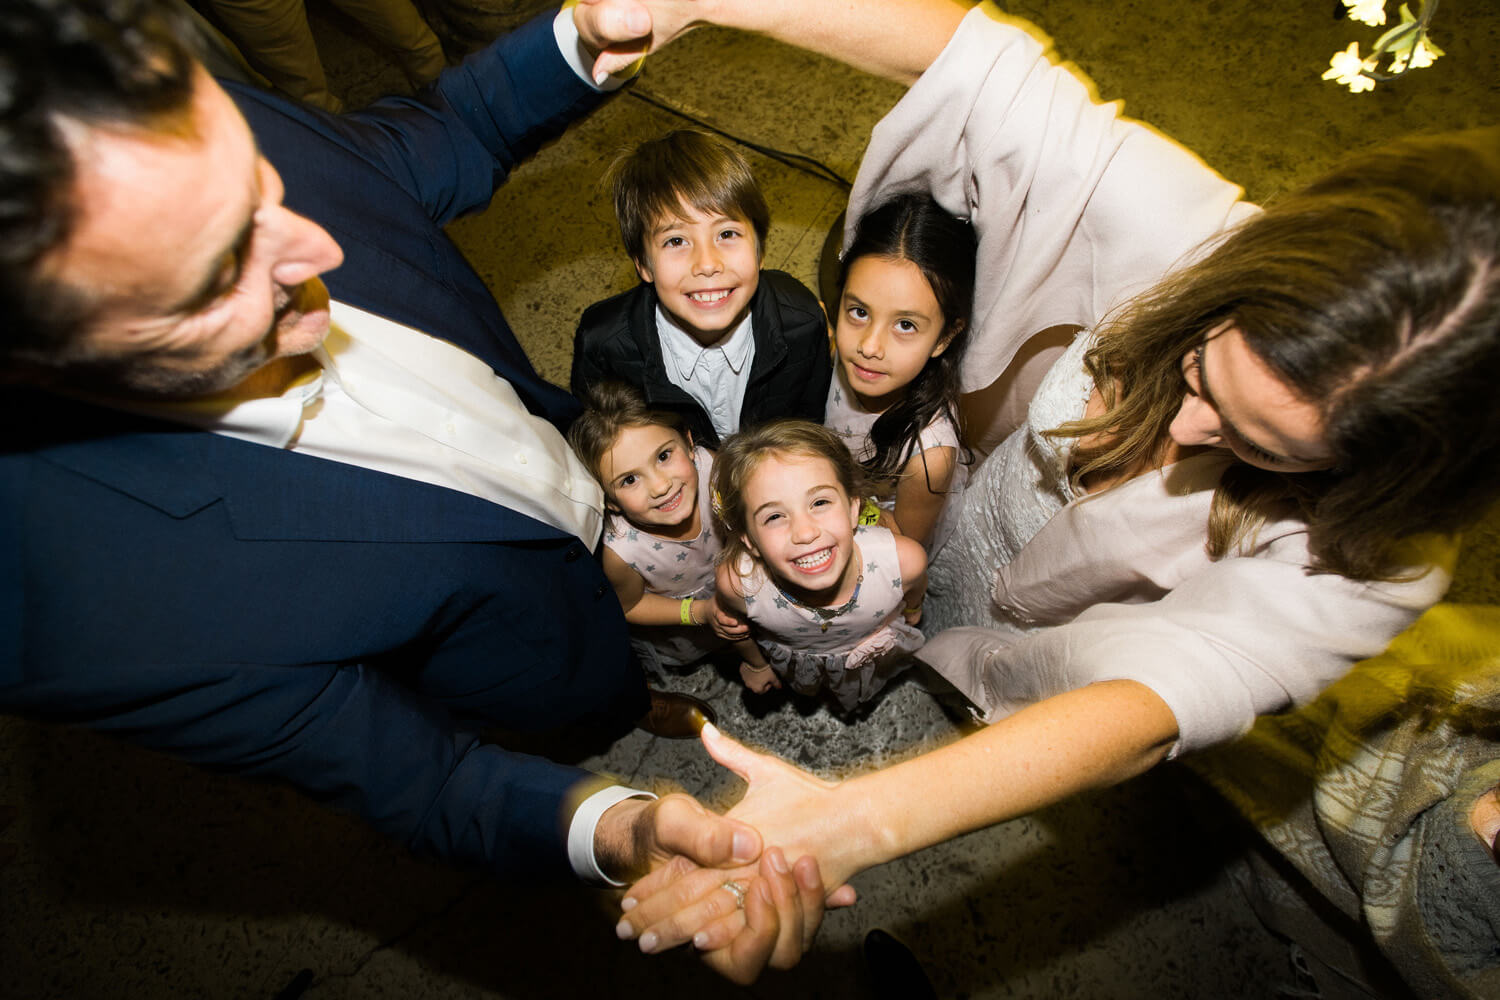 bride groom dance hold hands around four children wedding reception